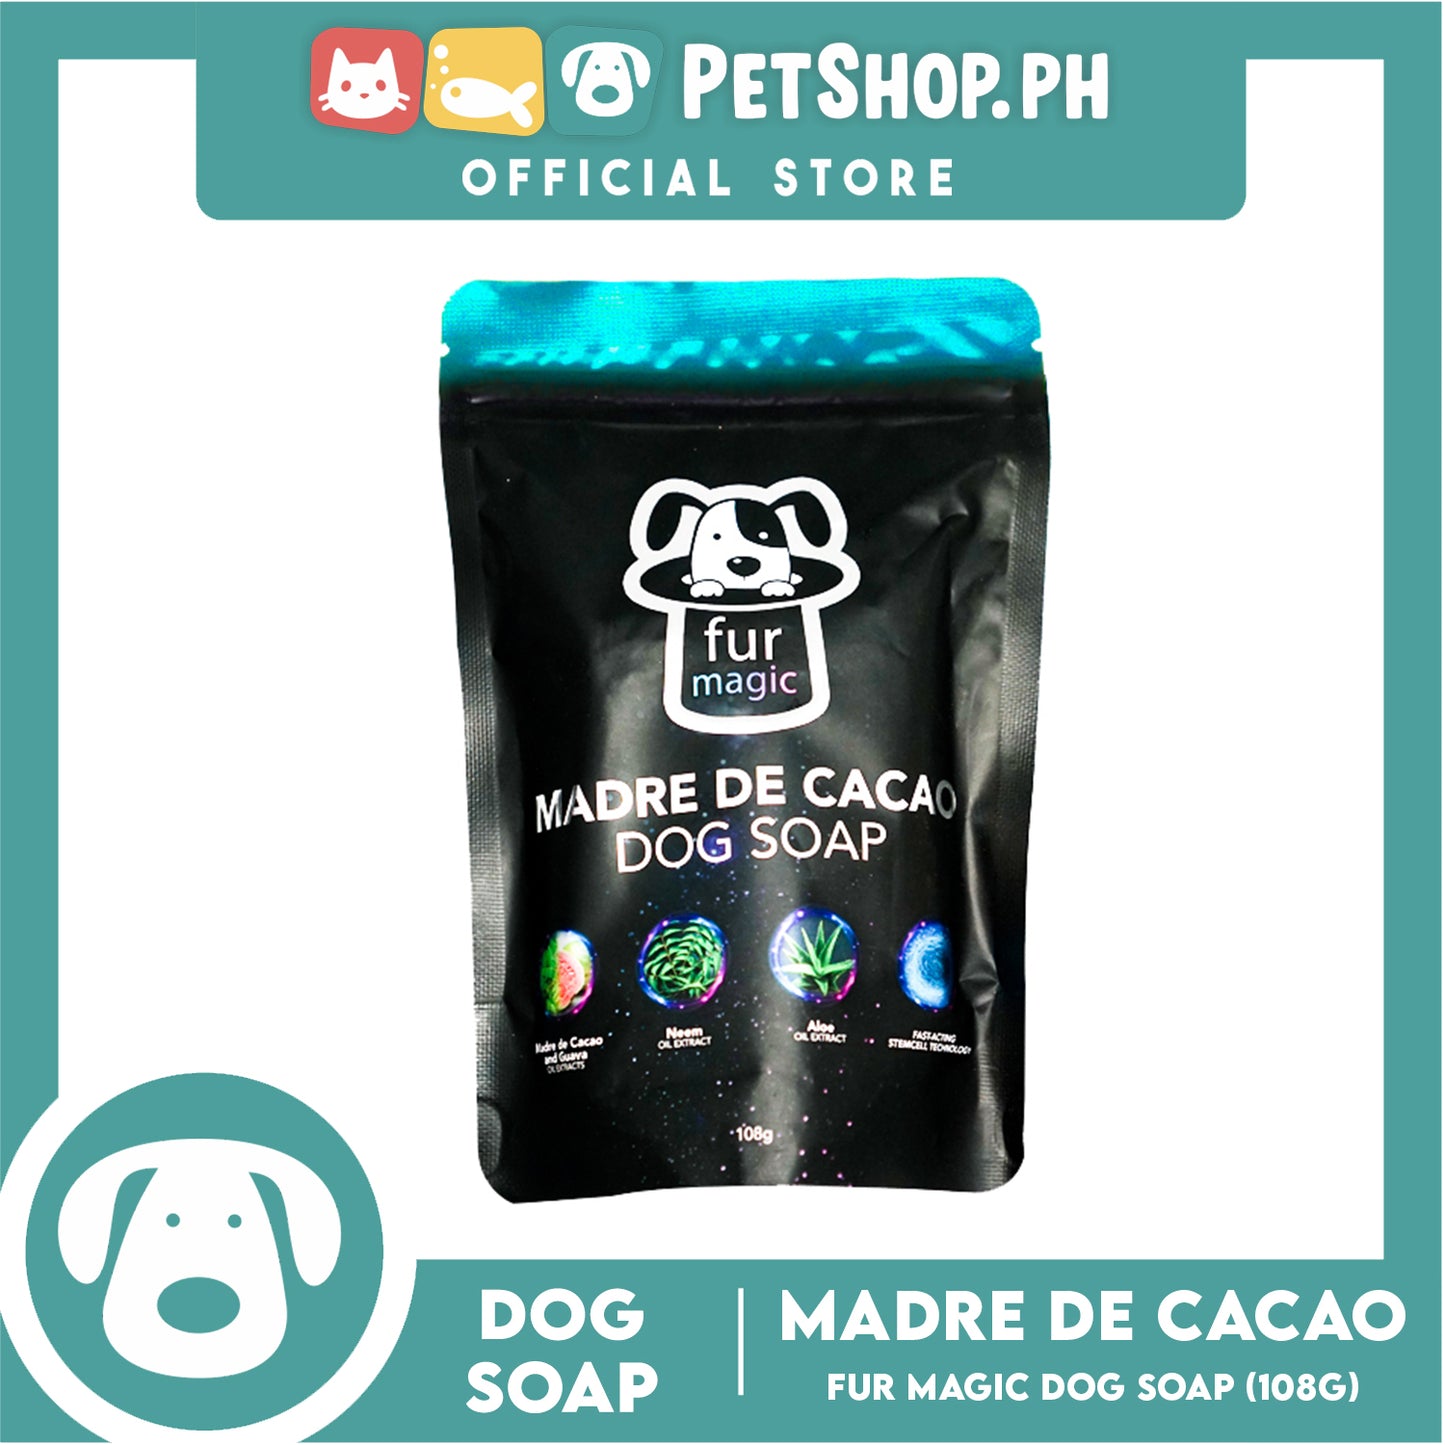 Fur magic Madre de Cacao 108g (Blue) Dog Soap